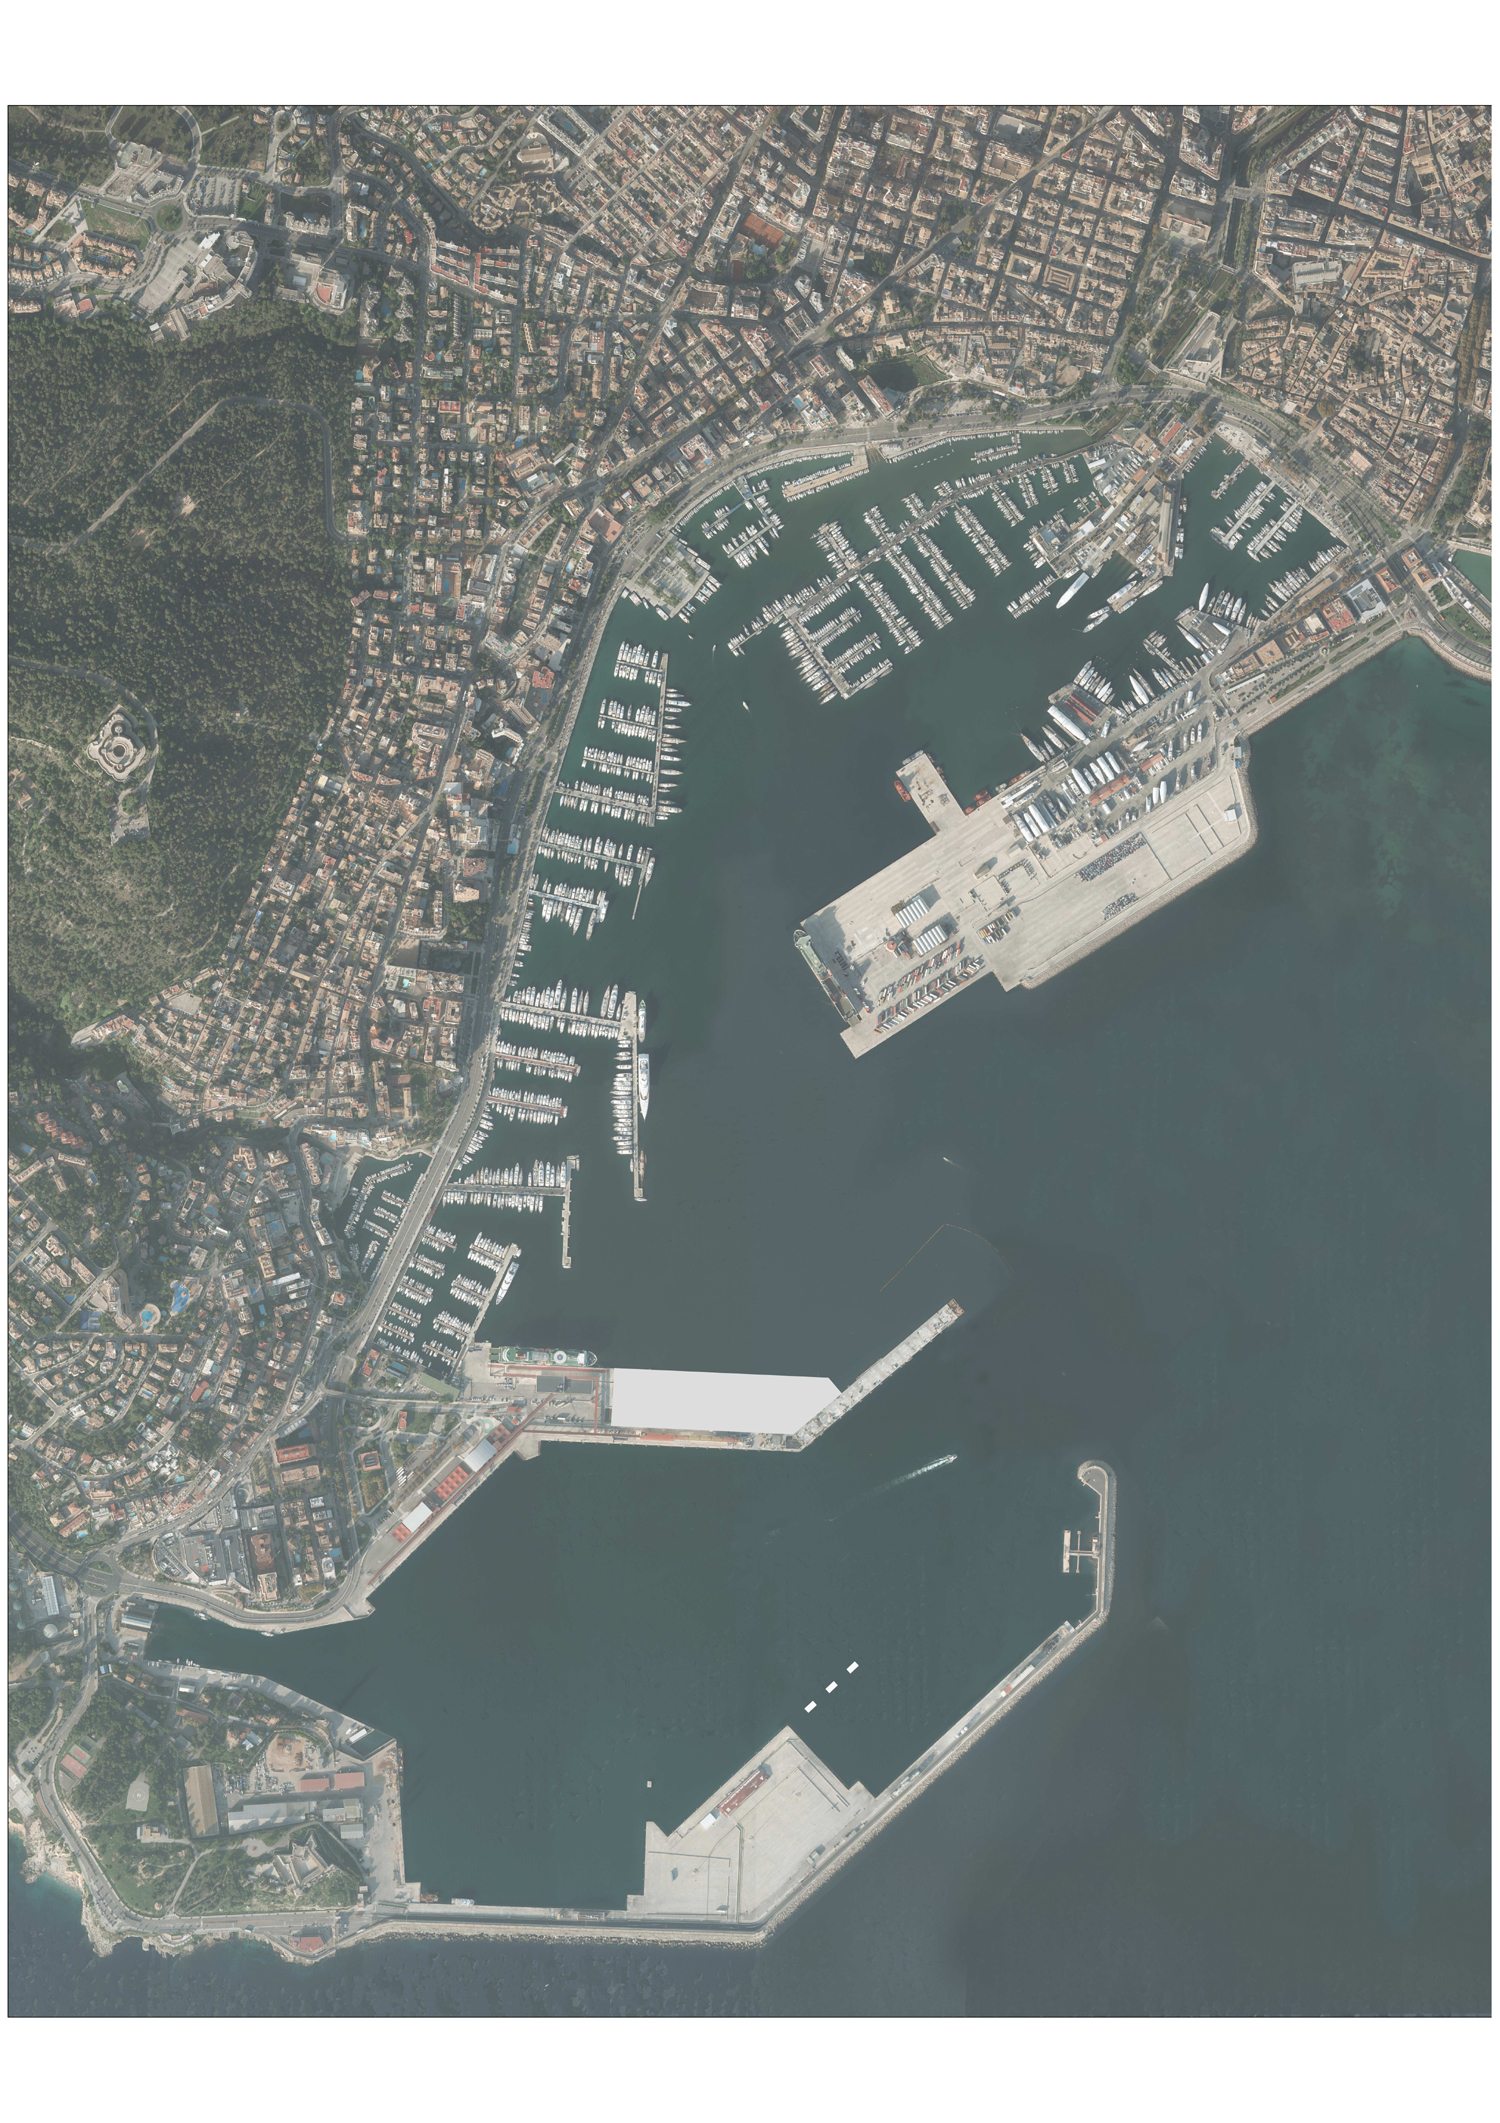 Concurs públic per ampliar el Moll de Ponent Nord del port de Palma 